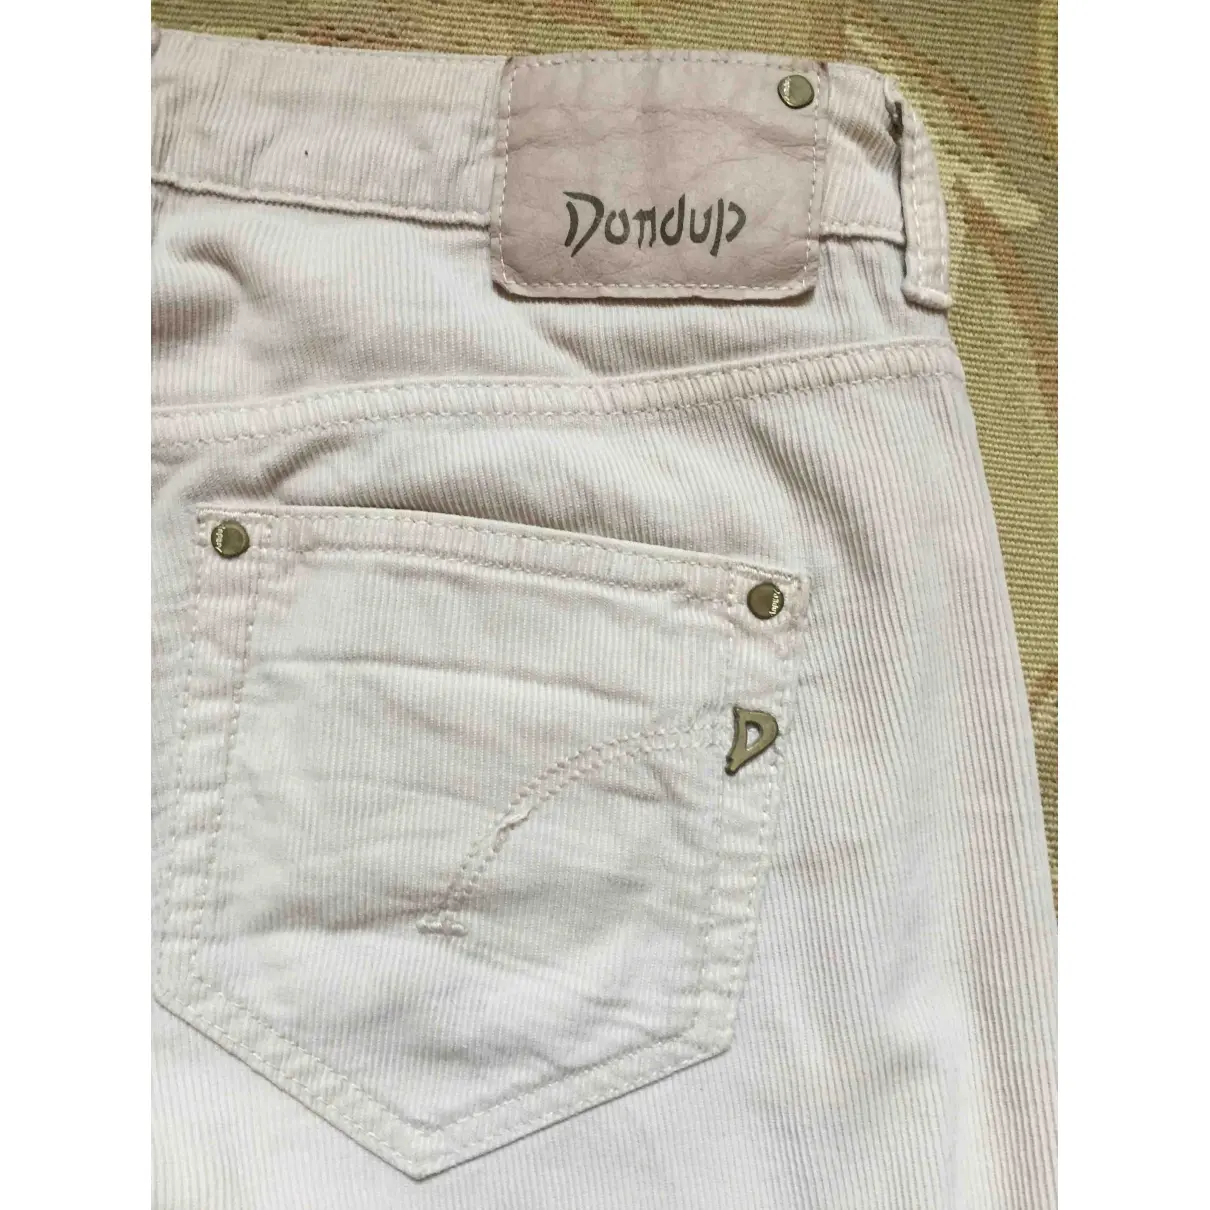 Buy Dondup Velvet slim pants online